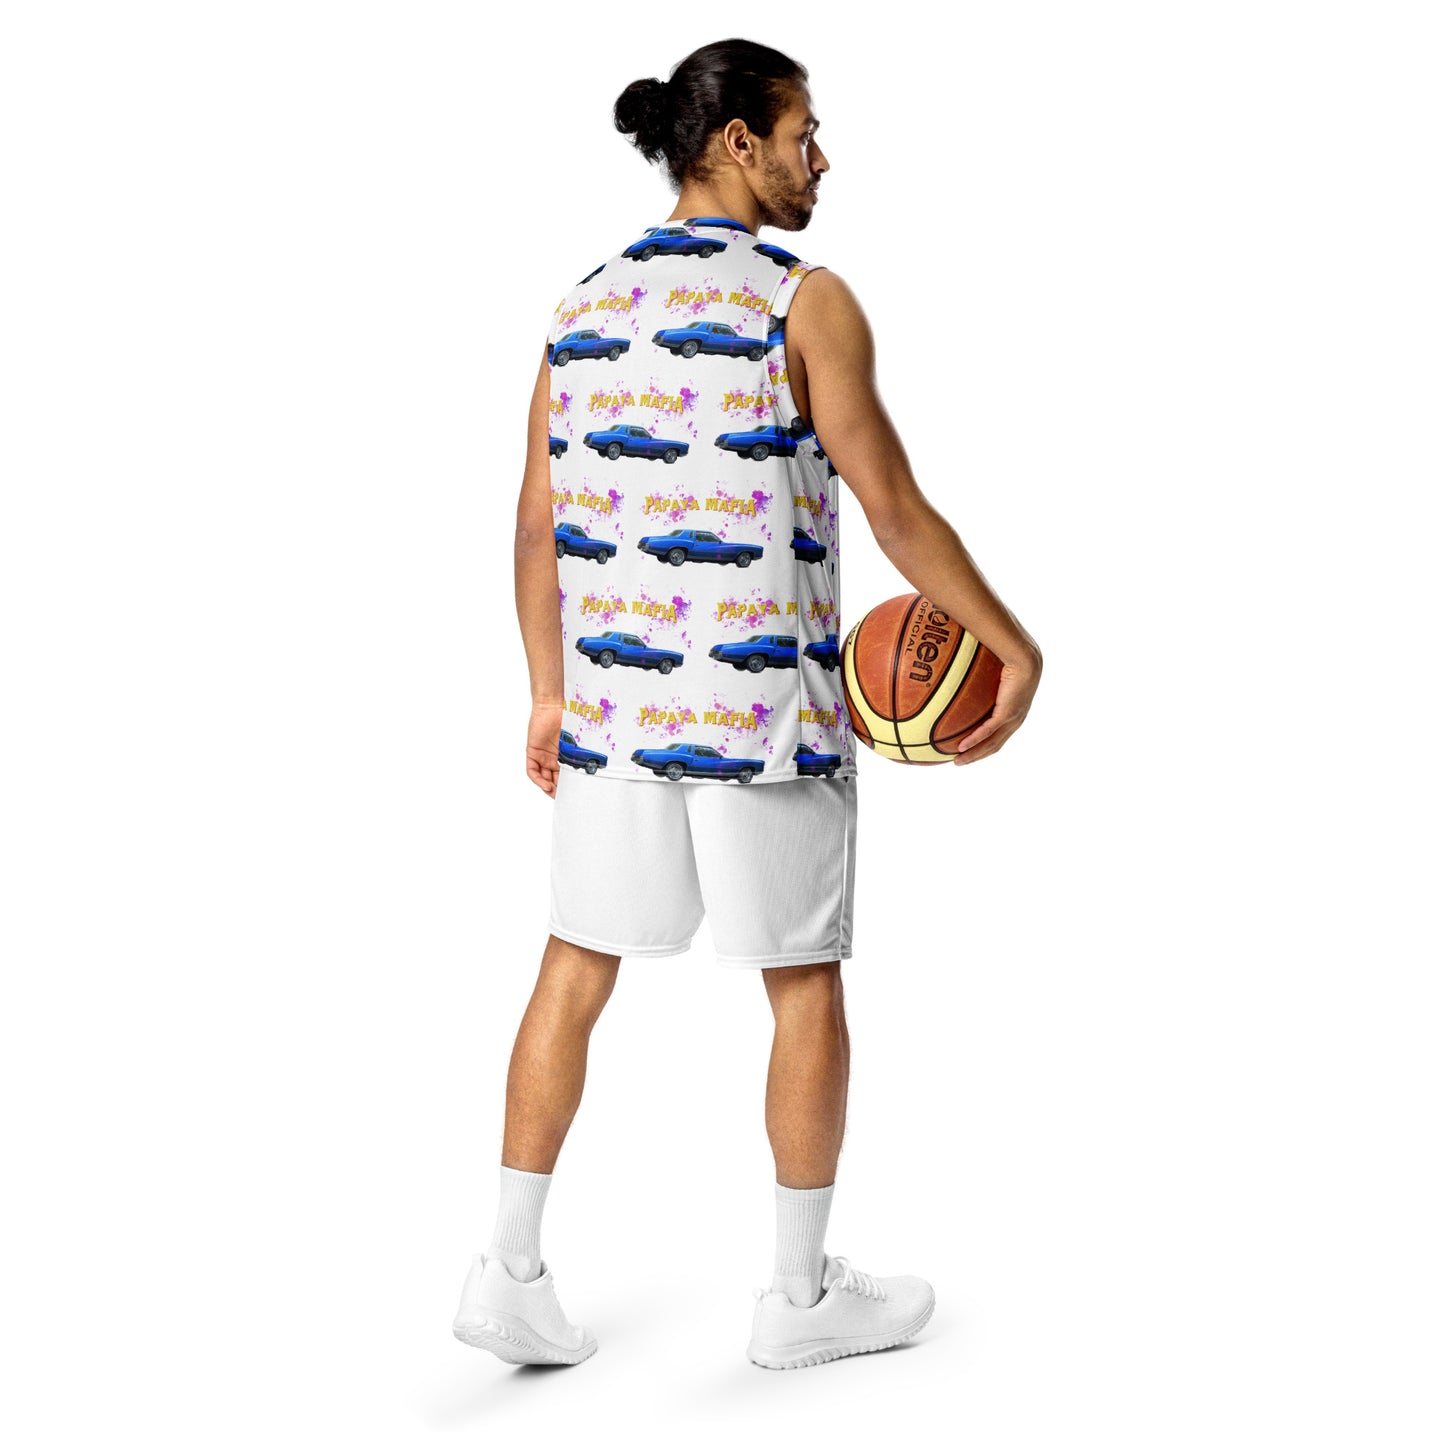 Monte CARLO 73 Papaya Mafia Recycled unisex basketball jersey